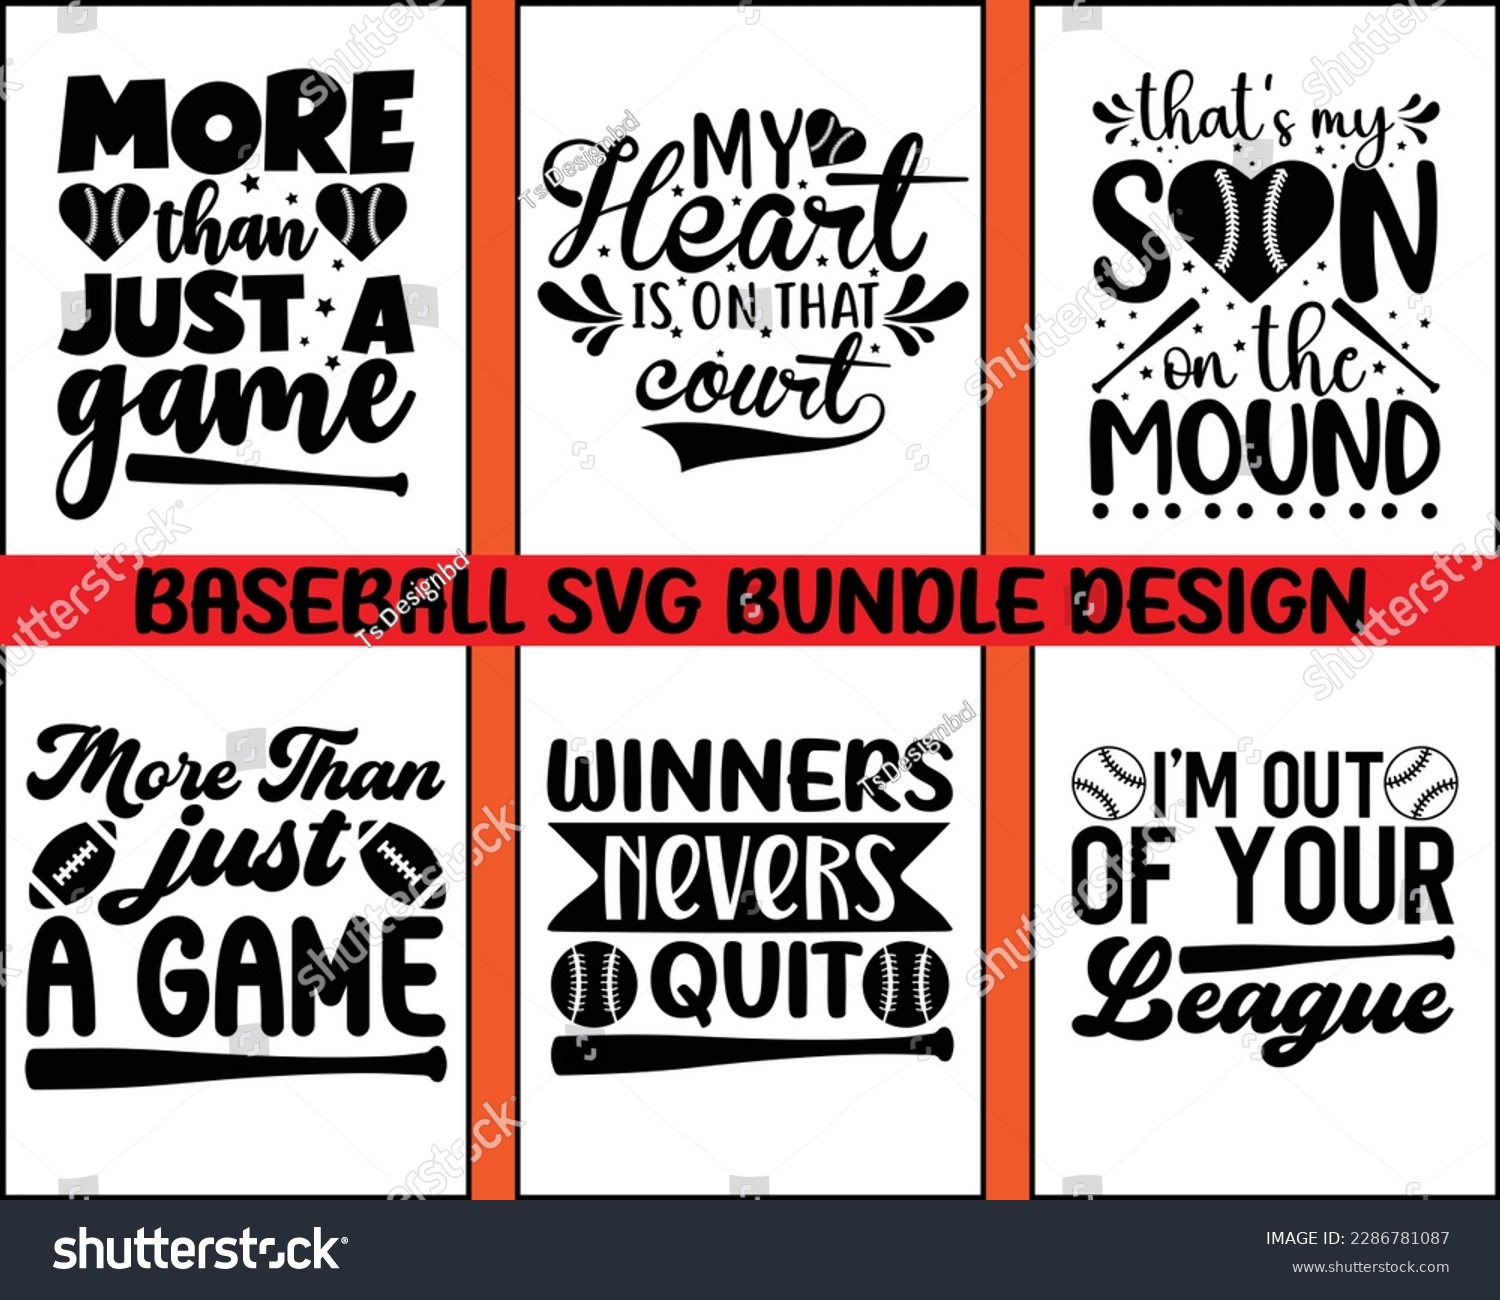 SVG of Baseball Svg Design Bundle,Baseball SVG, Baseball Mom Life svg, Supportive Mom svg,Baseball Quote,Baseball Mom SVG Bundle, trendy vector and typography Baseball t shirt design svg